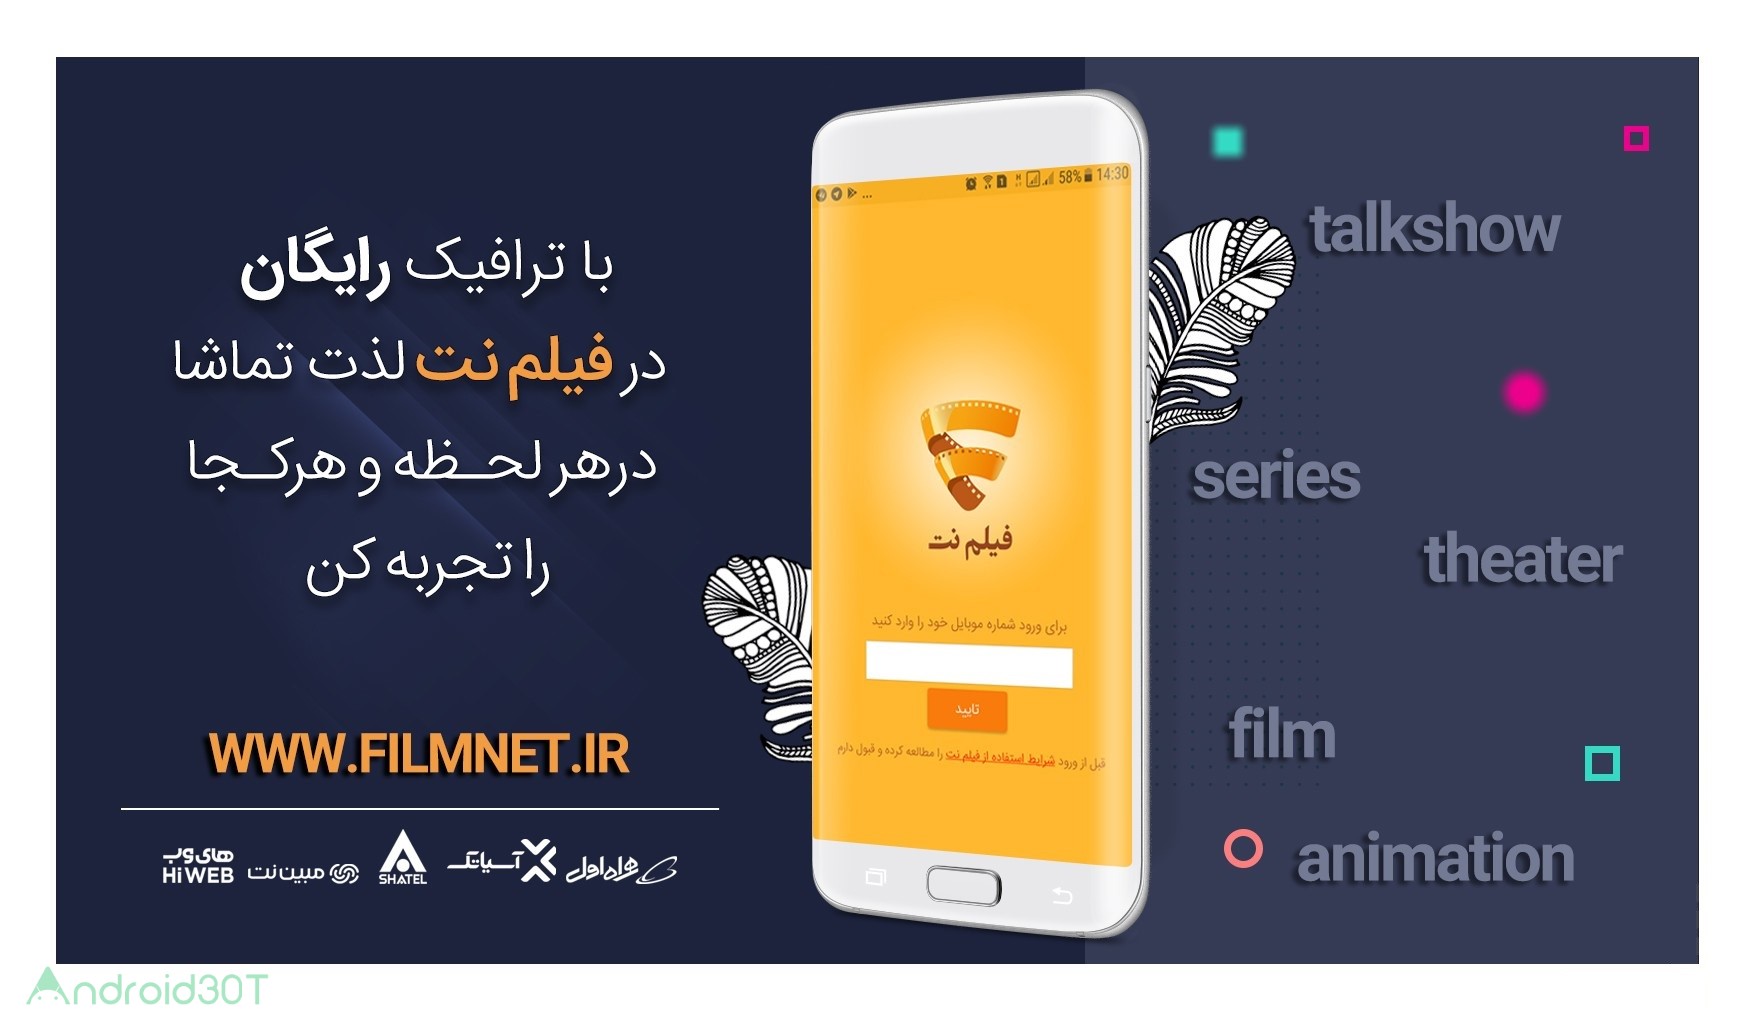 دانلود 1.1.2 Filmnet – اپلیکیشن دانلود فیلم و سریال، فیلم نت برای اندروید